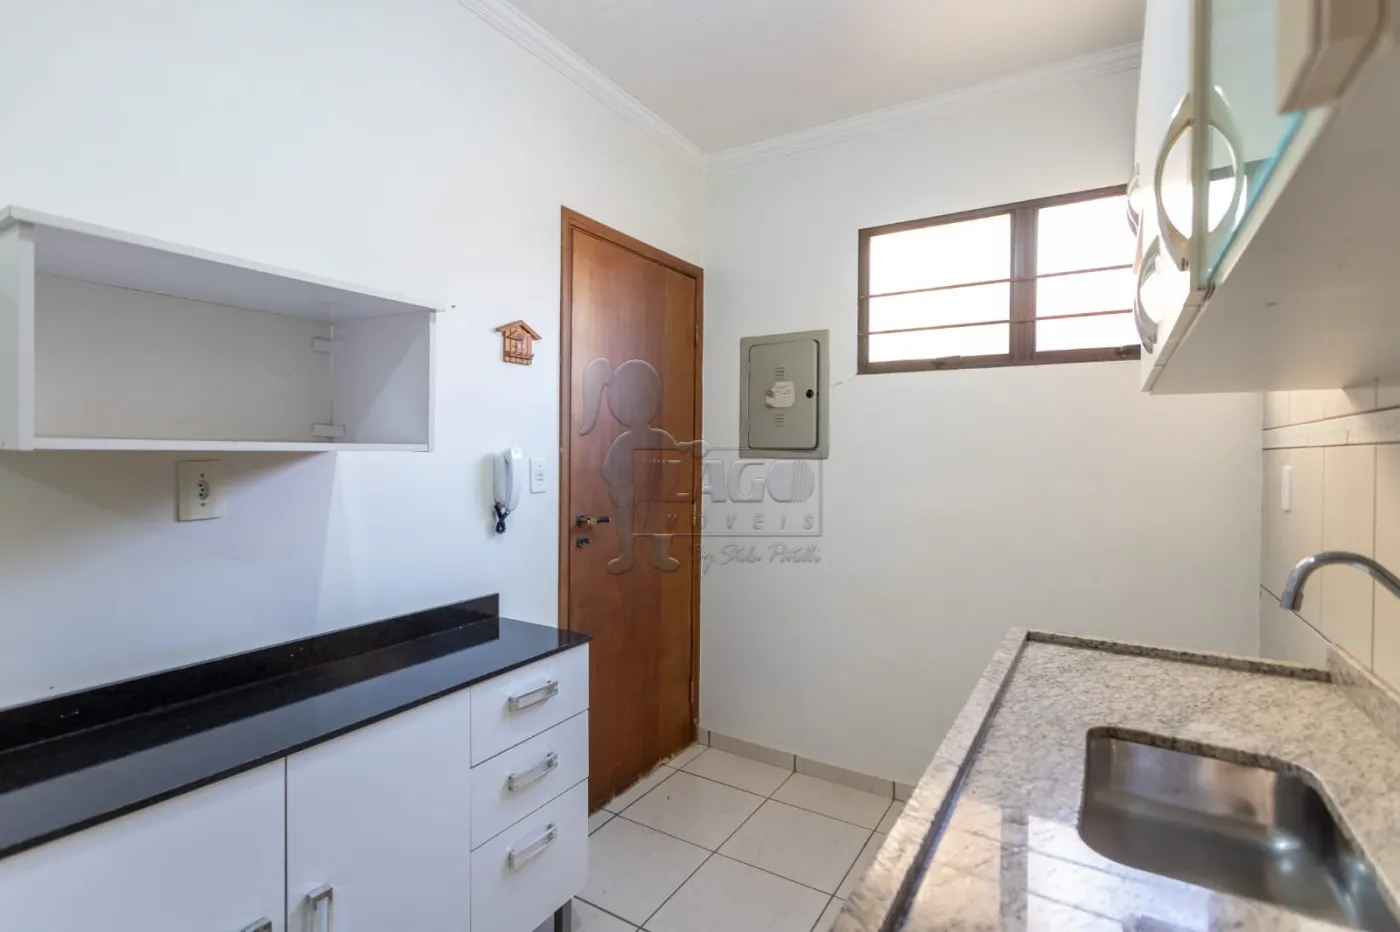 Comprar Apartamentos / Padrão em Ribeirão Preto R$ 260.000,00 - Foto 13